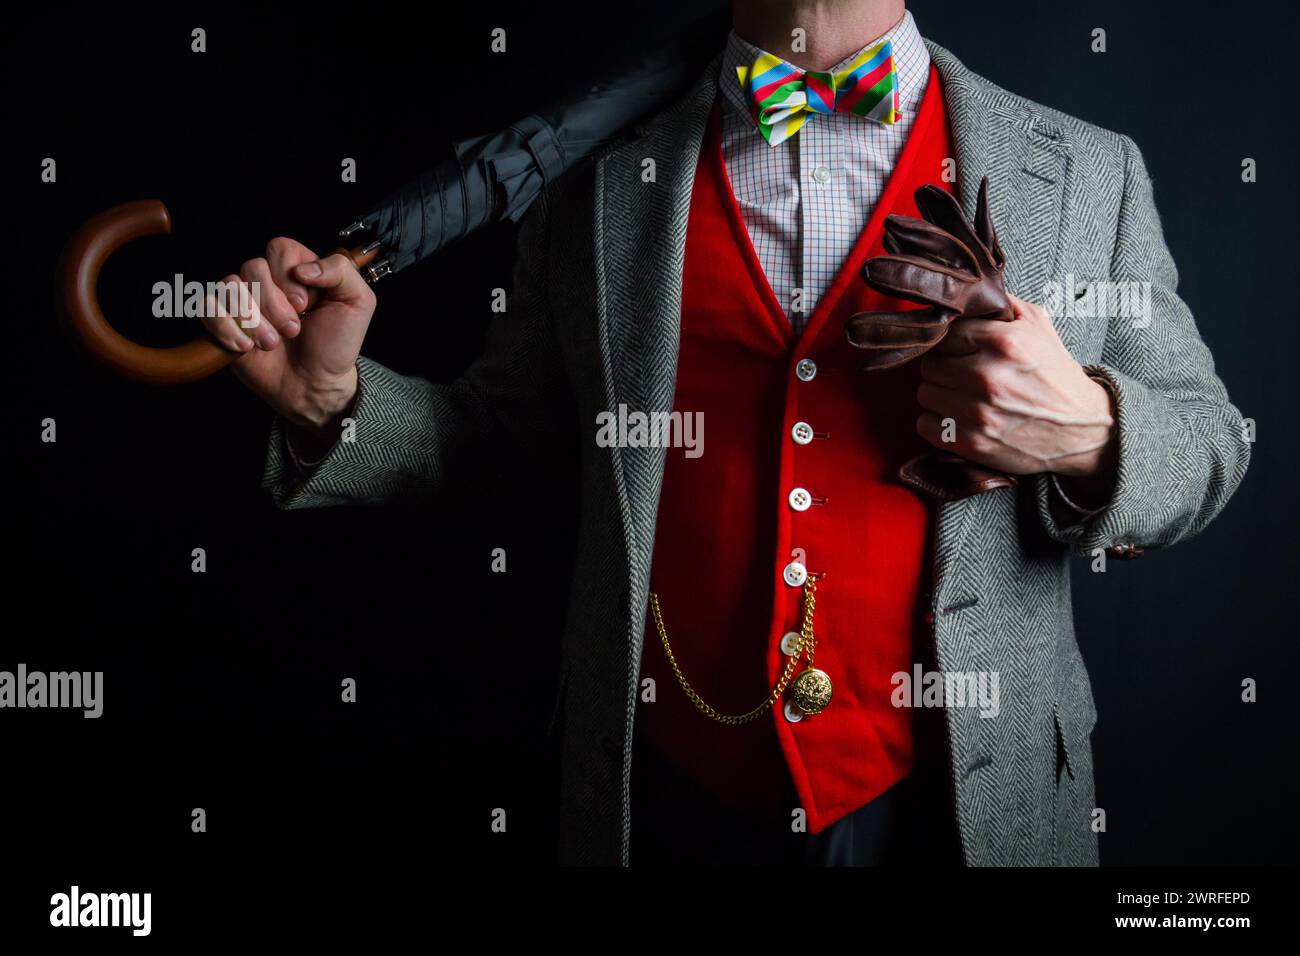 Portrait de gentleman en costume Tweed et gilet rouge debout élégamment. Style vintage et mode rétro. Banque D'Images